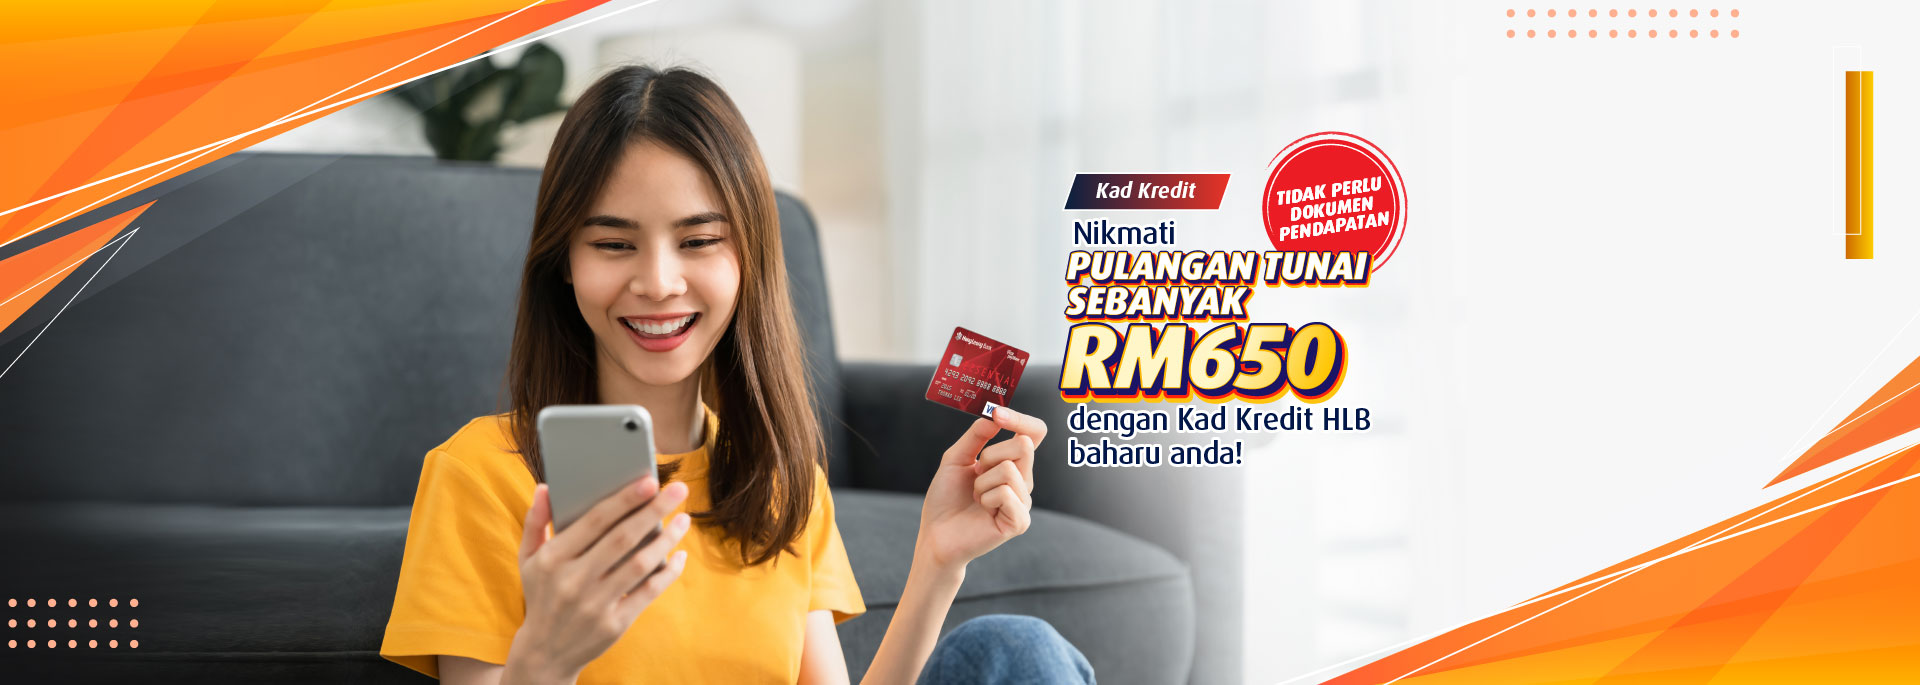 Tidak Perlu Dokumen Pendapatan! Dapatkan Pulangan Tunai sebanyak RM650 dengan Kad Kredit HLB baharu 